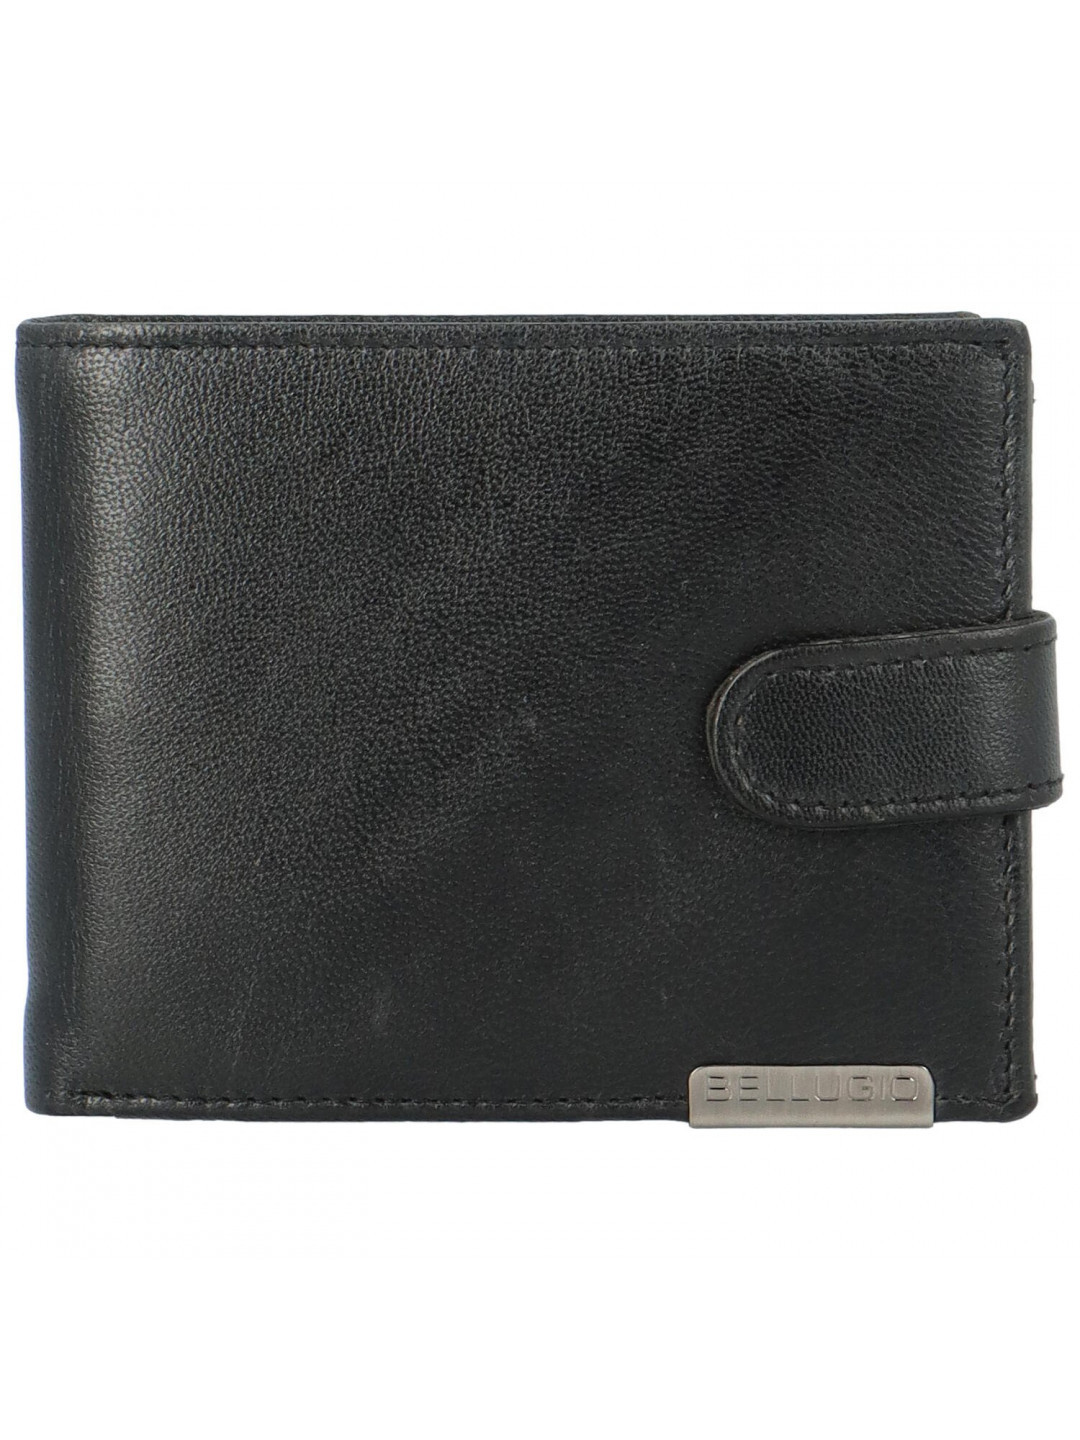 Pánská kožená peněženka na šířku Bellugio Asher černá